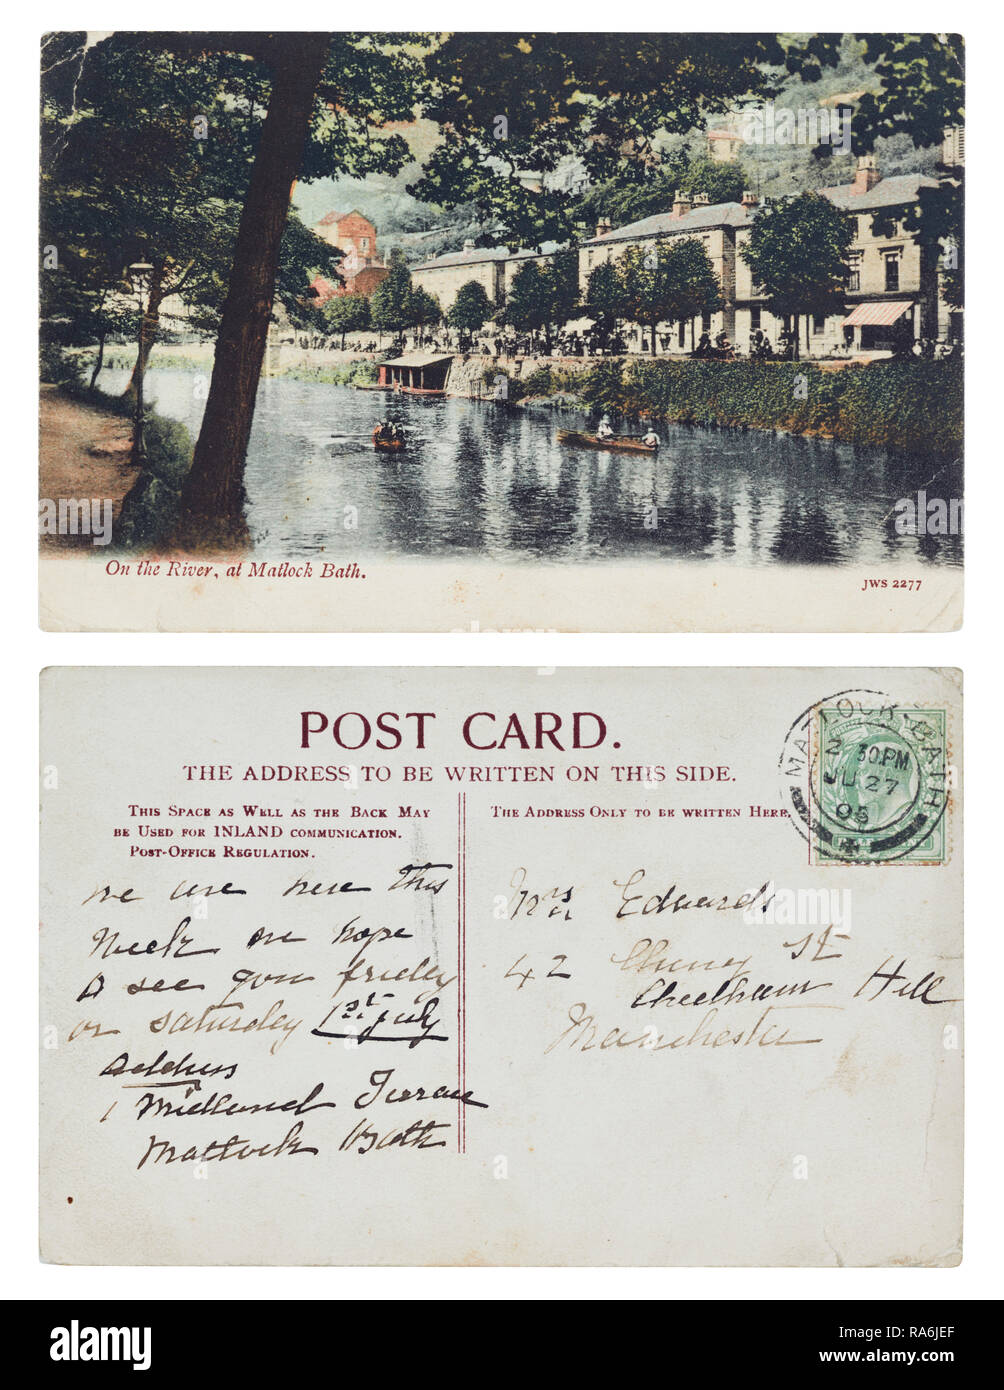 Cartoline inviate da 1 Midland terrazza, Matlock Bath alla signora Edwards, 42 Cherry Street, Cheetham Hill, Manchester nel luglio 1905 Foto Stock